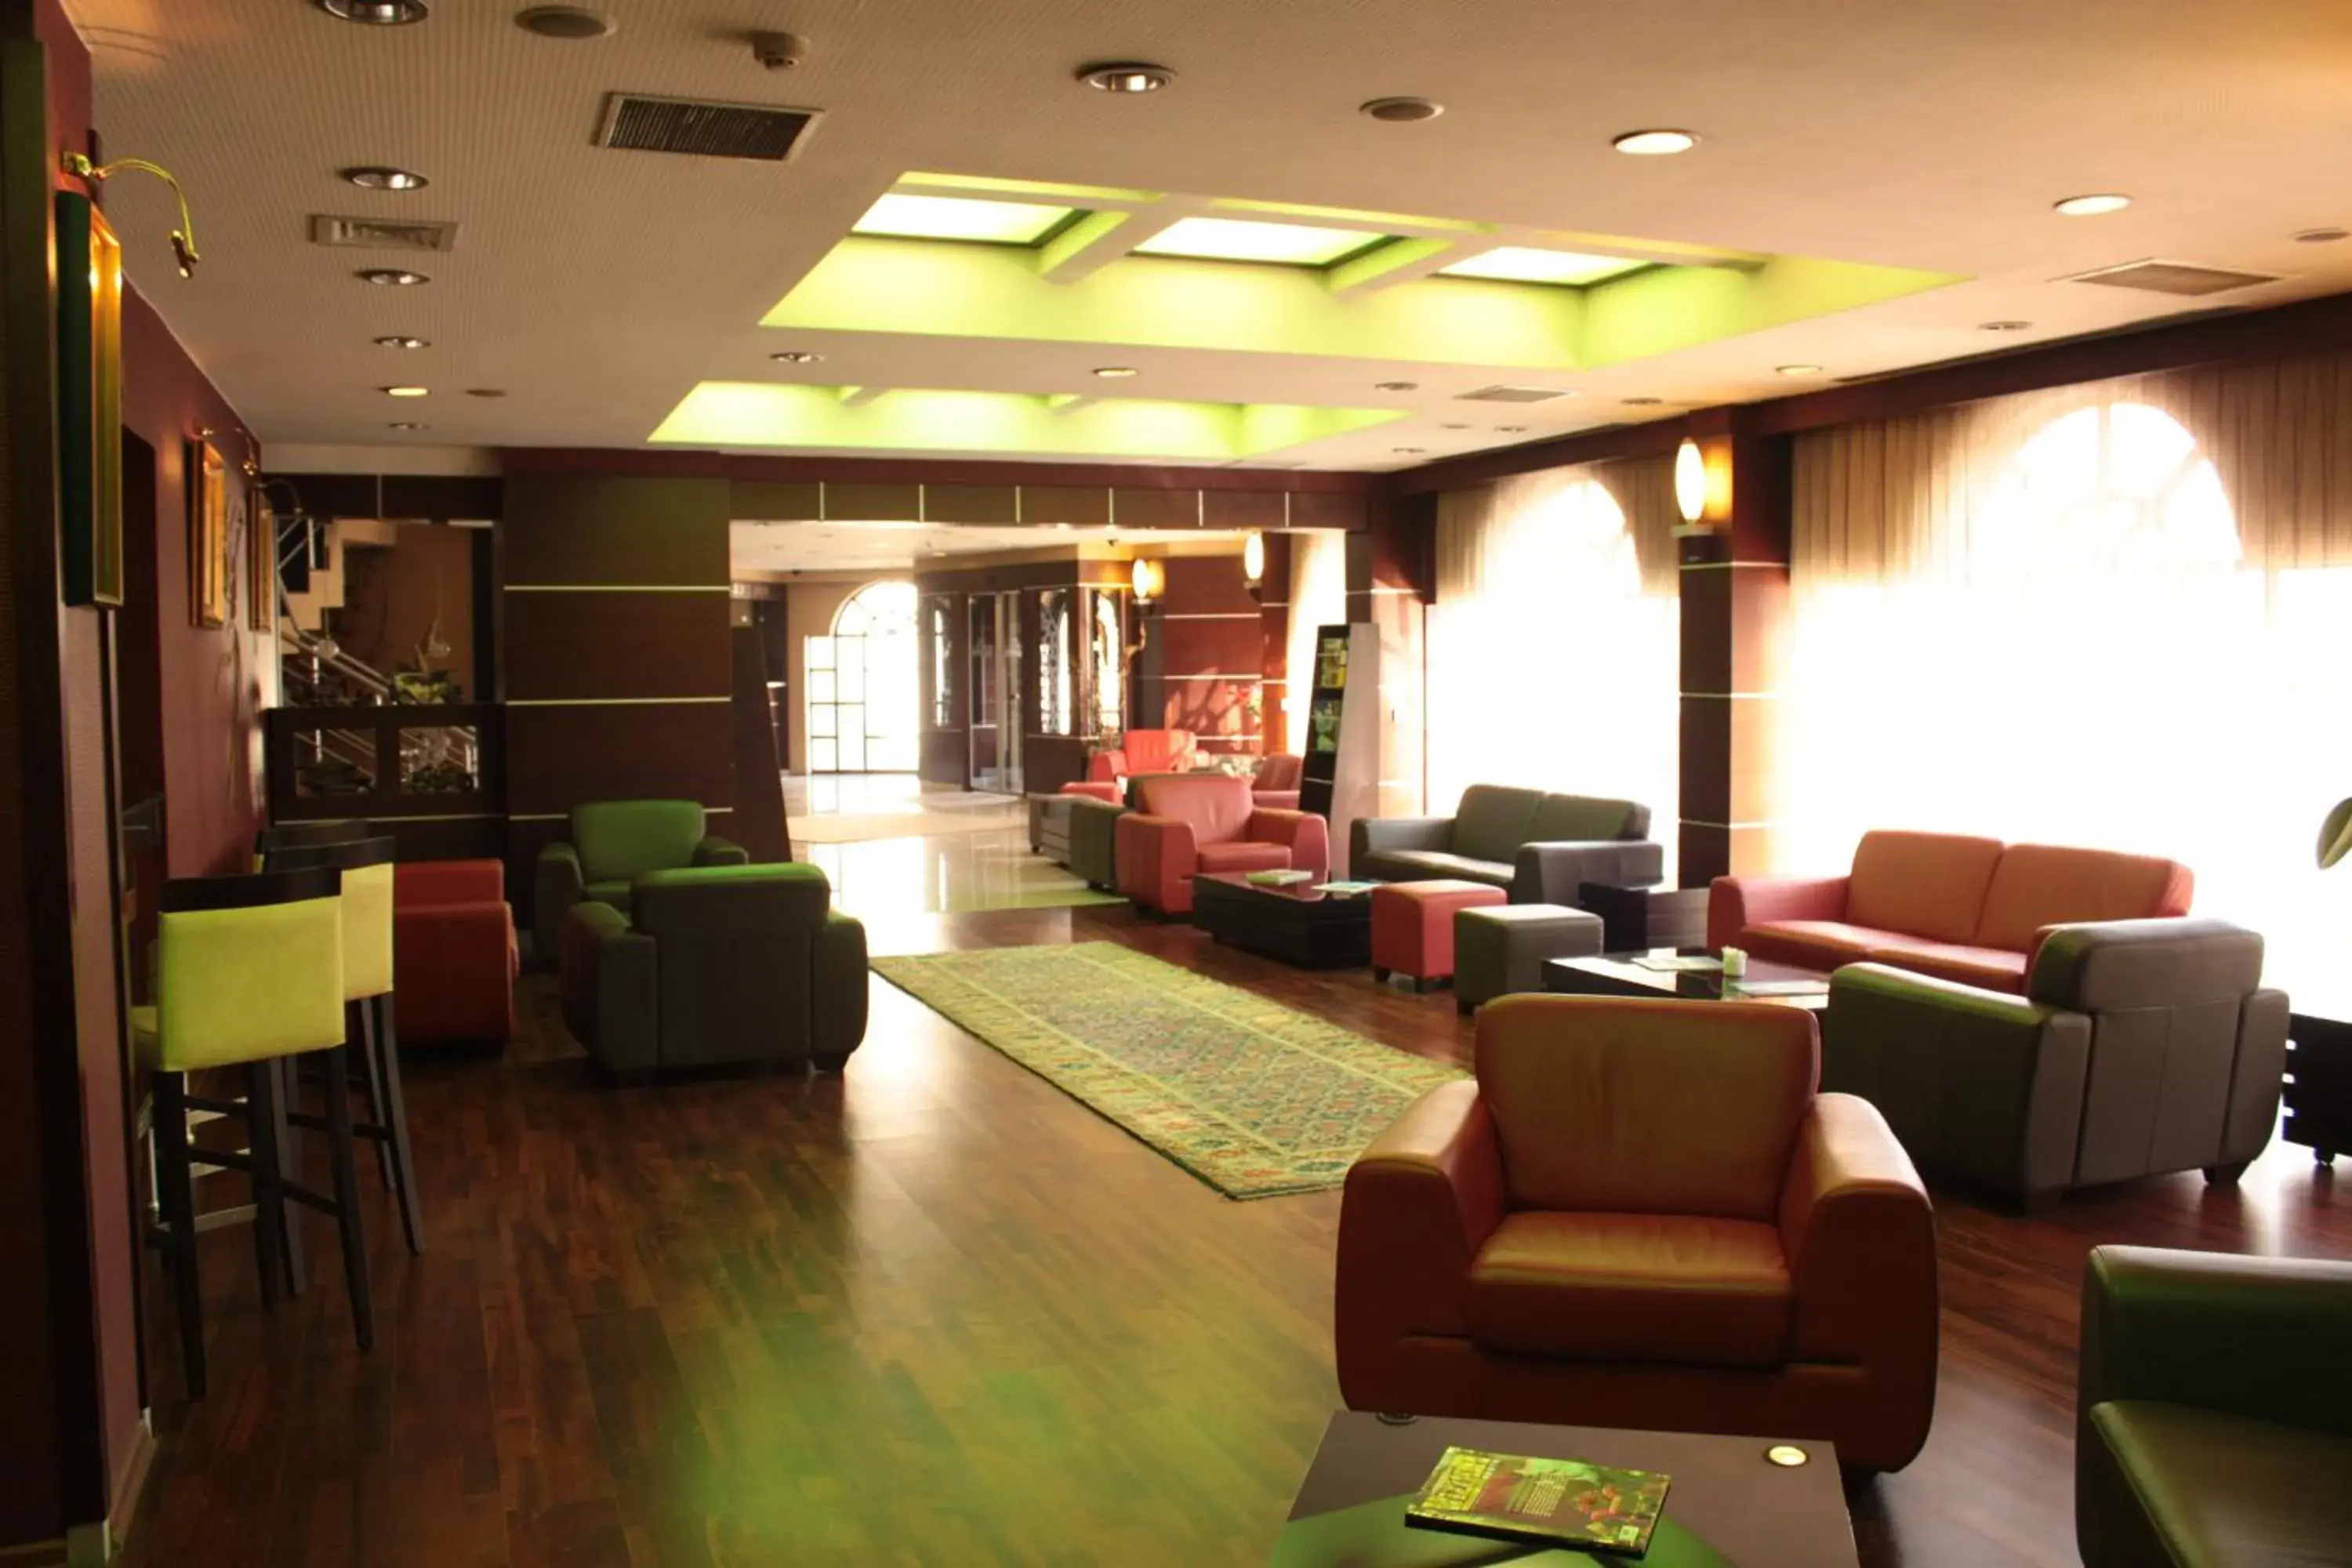 Lobby or reception, Lobby/Reception in Rumi Hotel